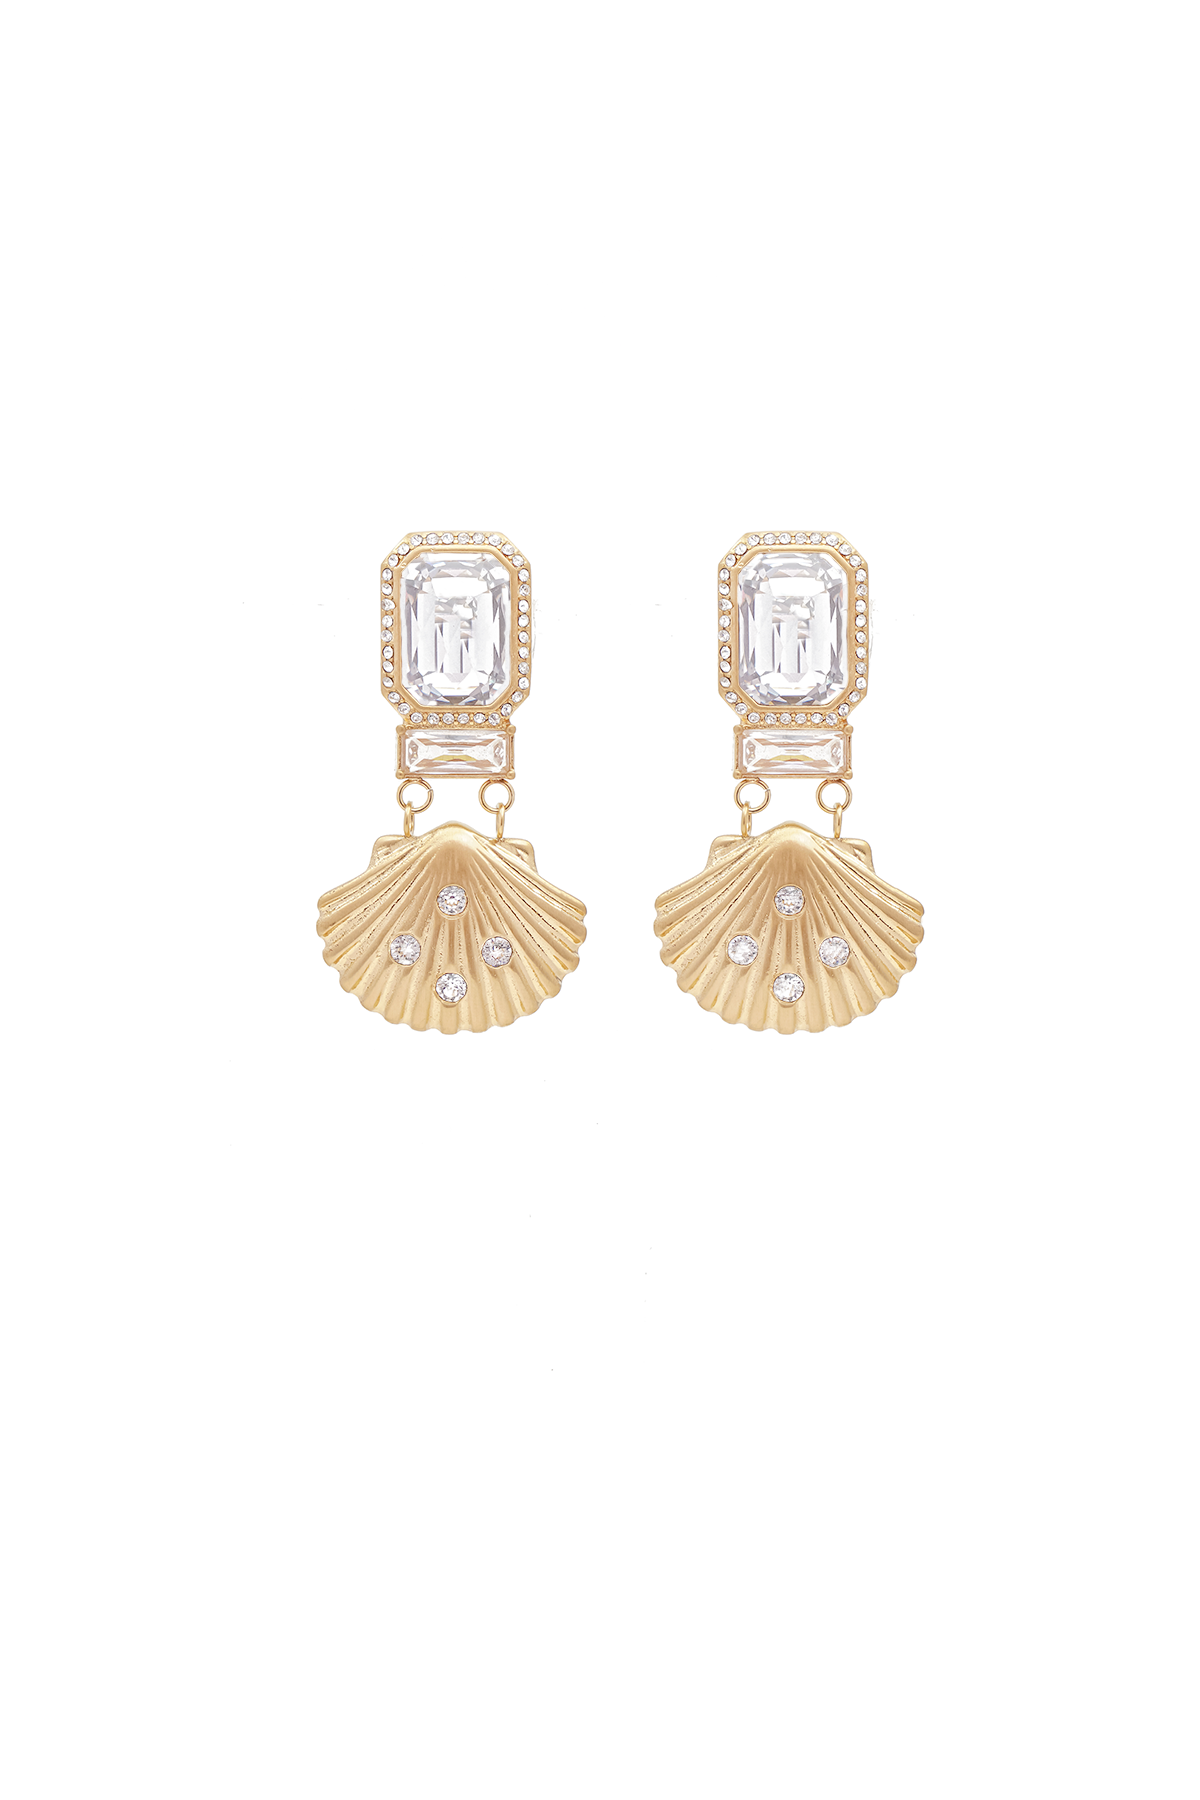 Shell glam earrings